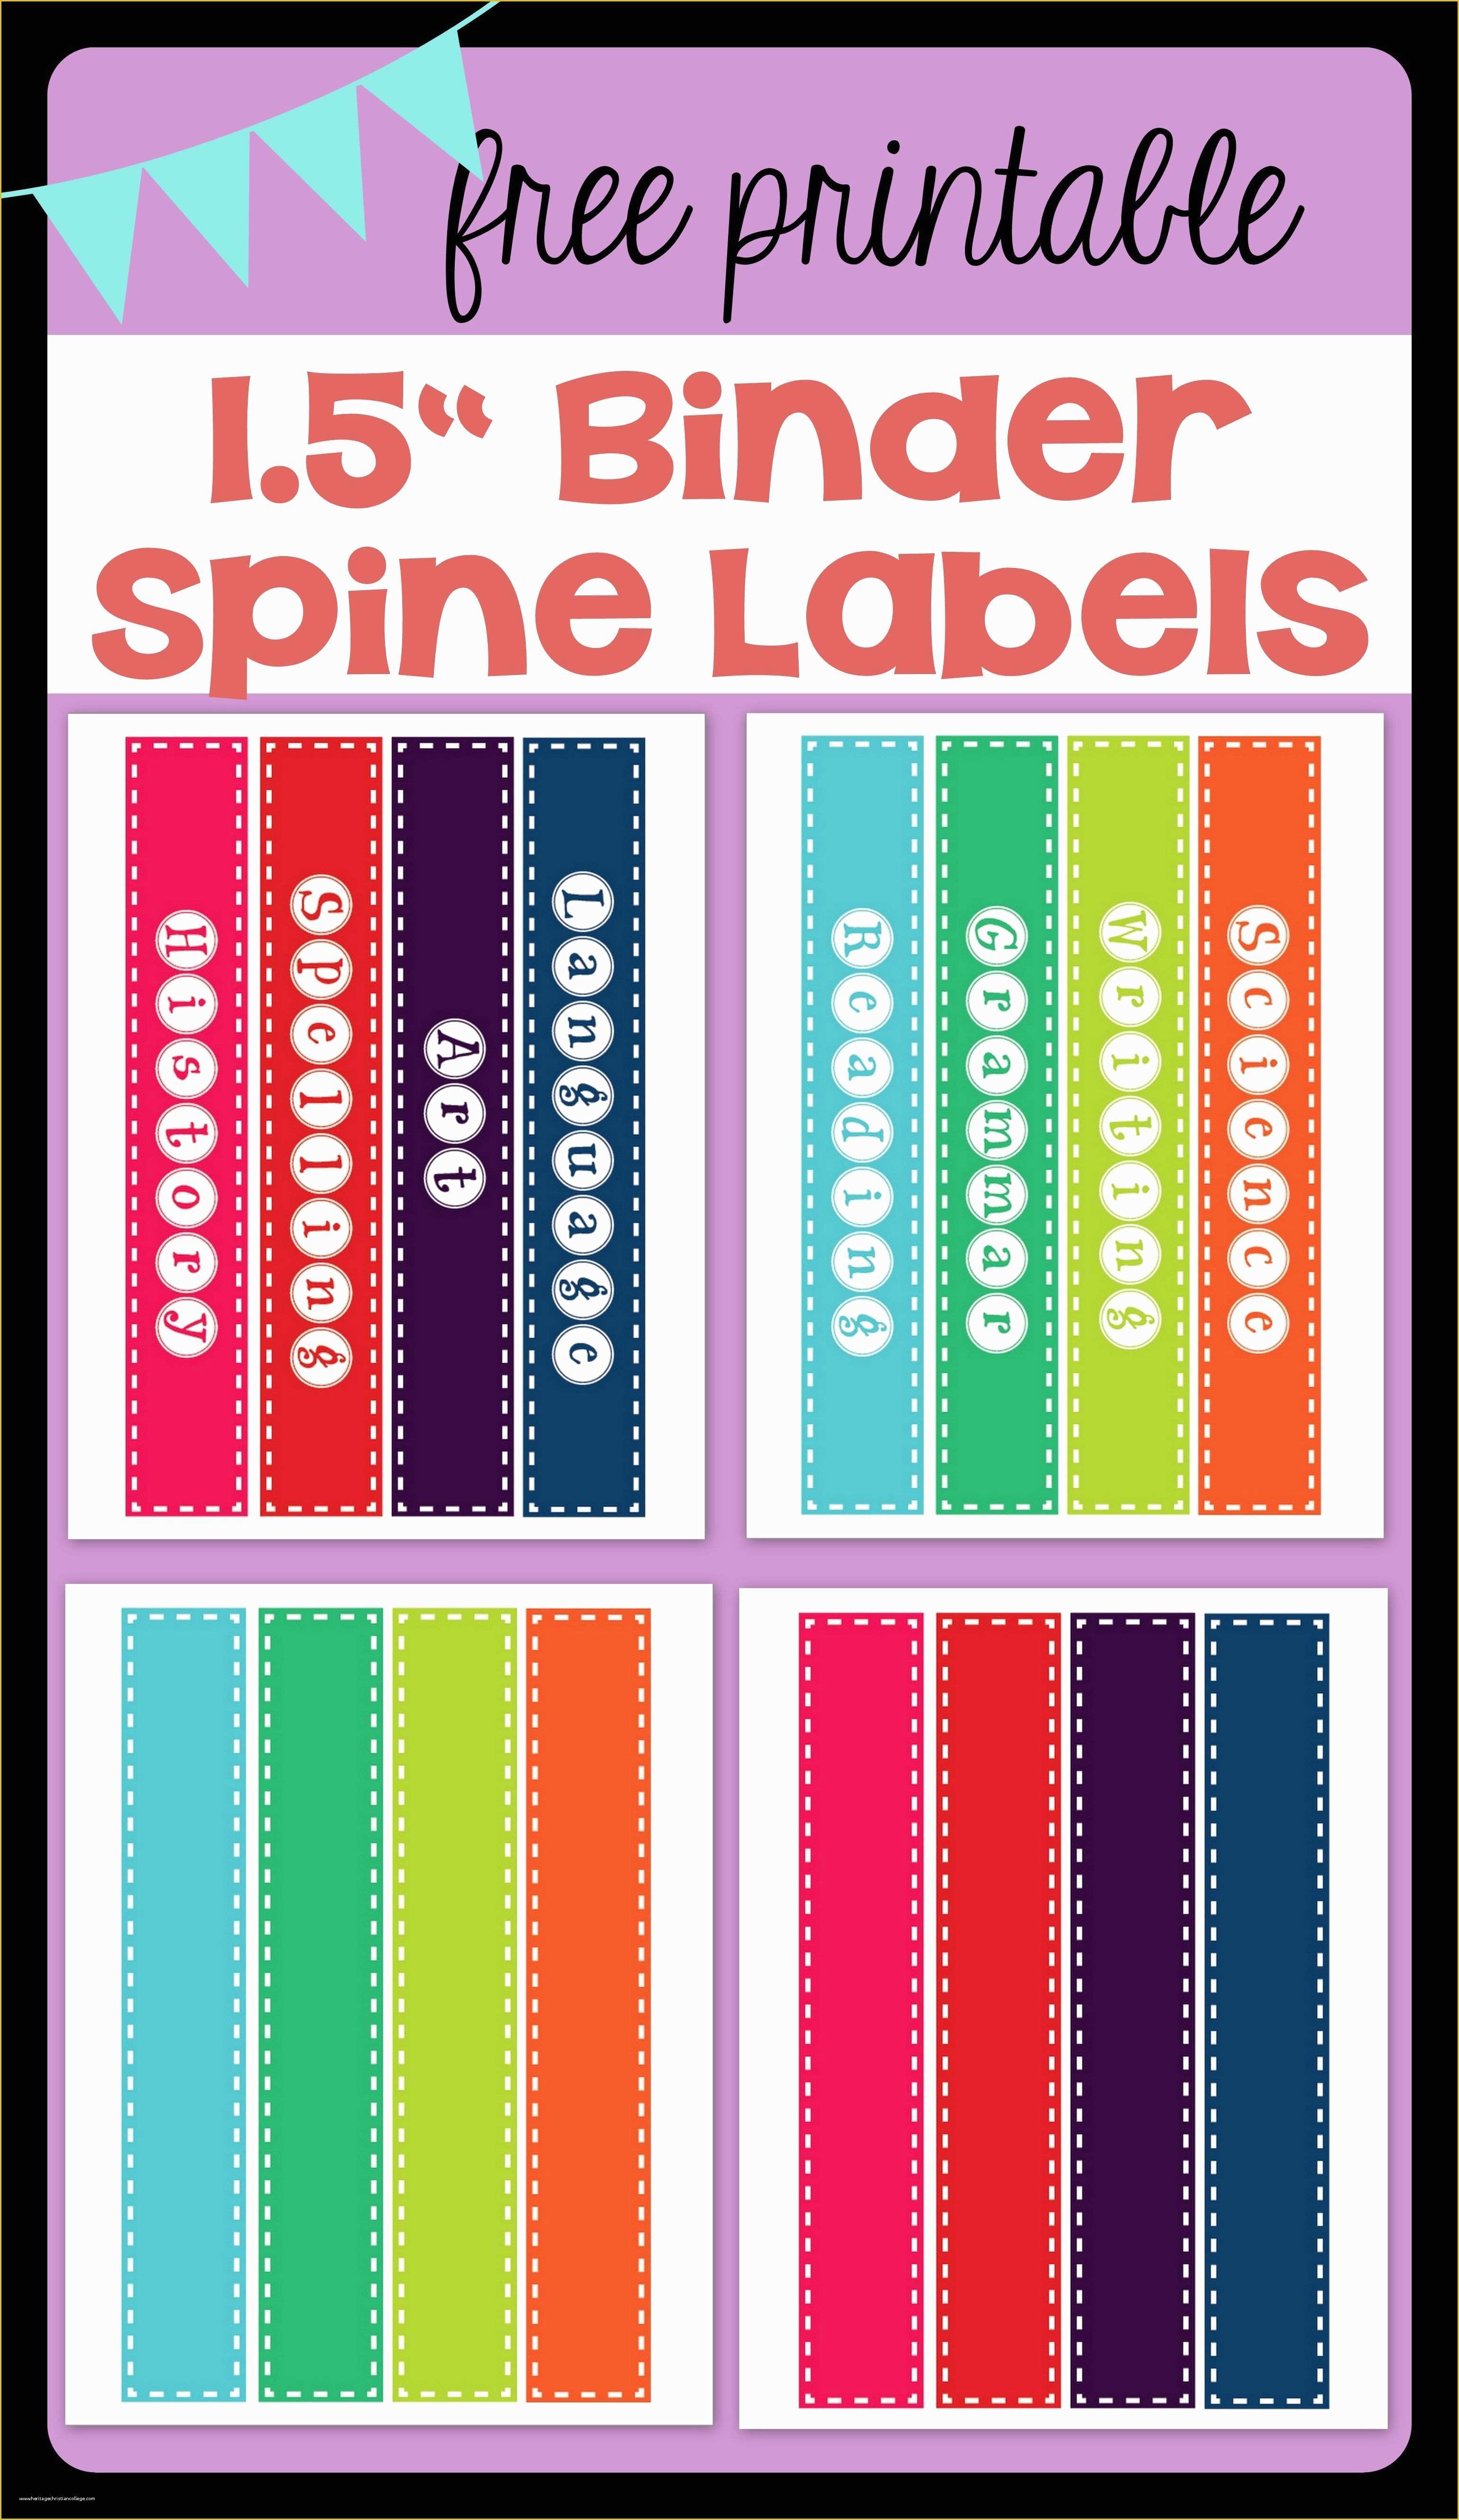 Binder Spine Label Template Free Of Free Printable 1 5" Binder Spine Labels for Basic School